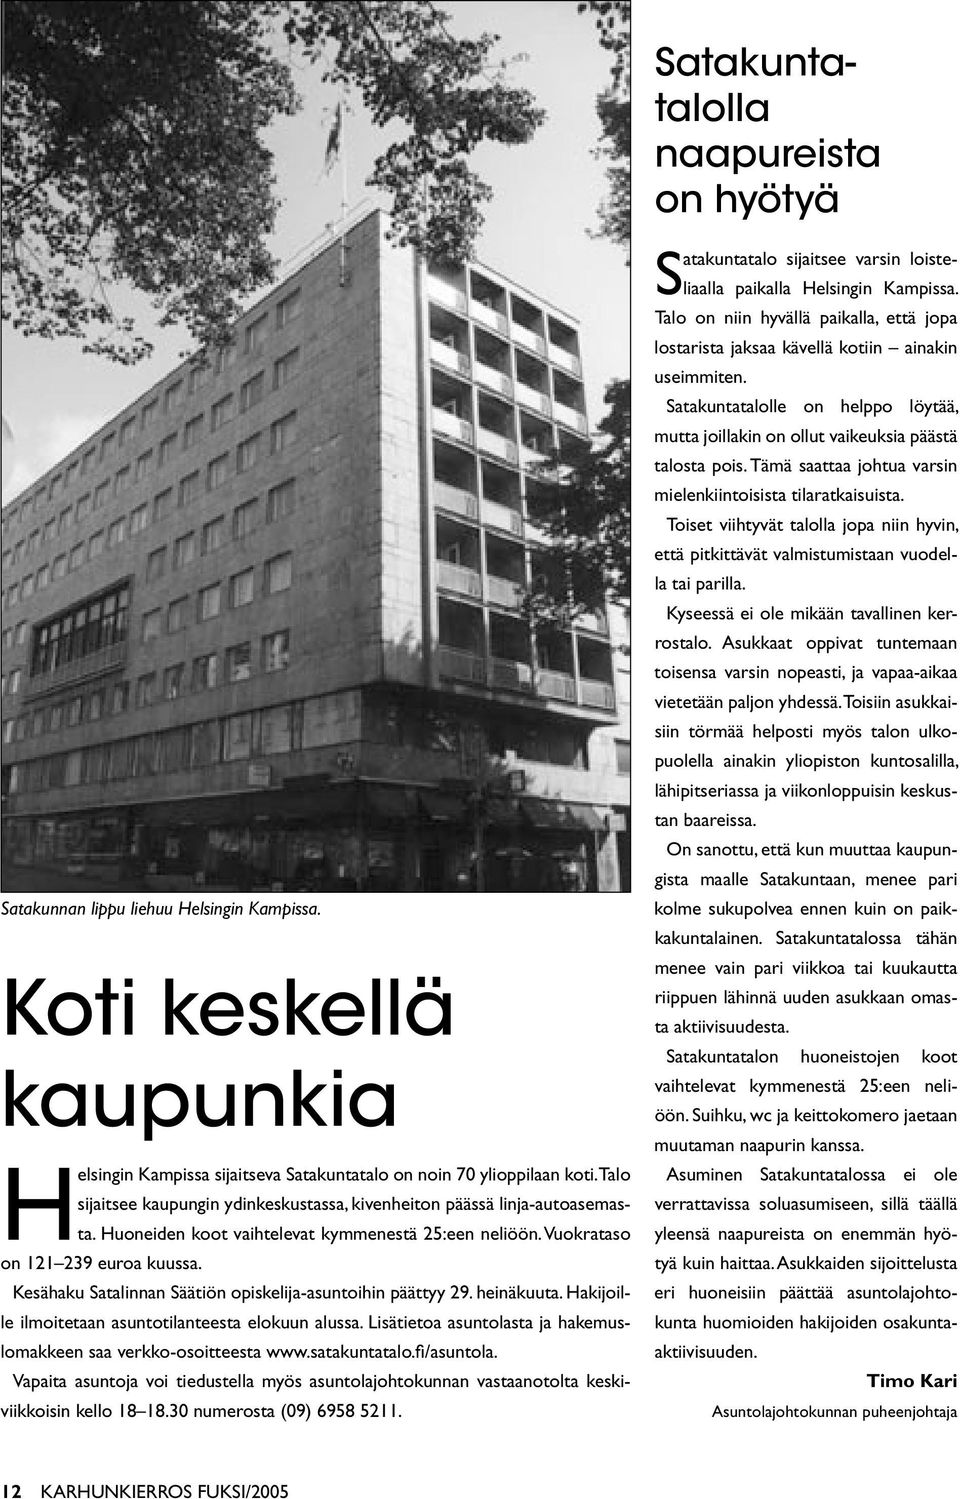 Kesähaku Satalinnan Säätiön opiskelija-asuntoihin päättyy 29. heinäkuuta. Hakijoille ilmoitetaan asuntotilanteesta elokuun alussa.